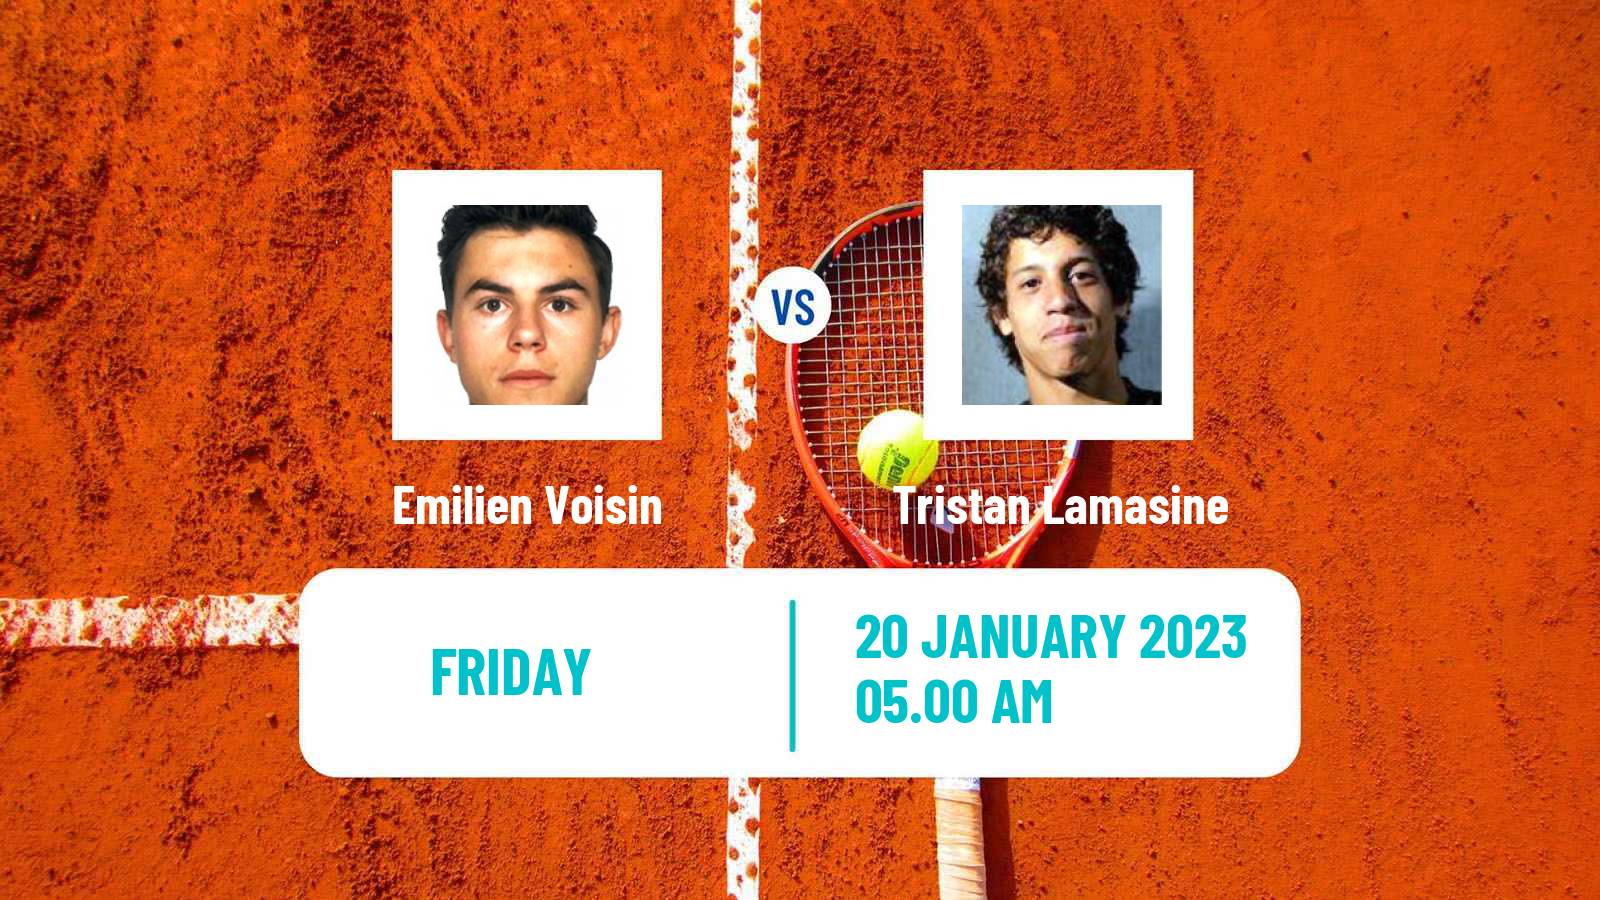 Tennis ITF Tournaments Emilien Voisin - Tristan Lamasine